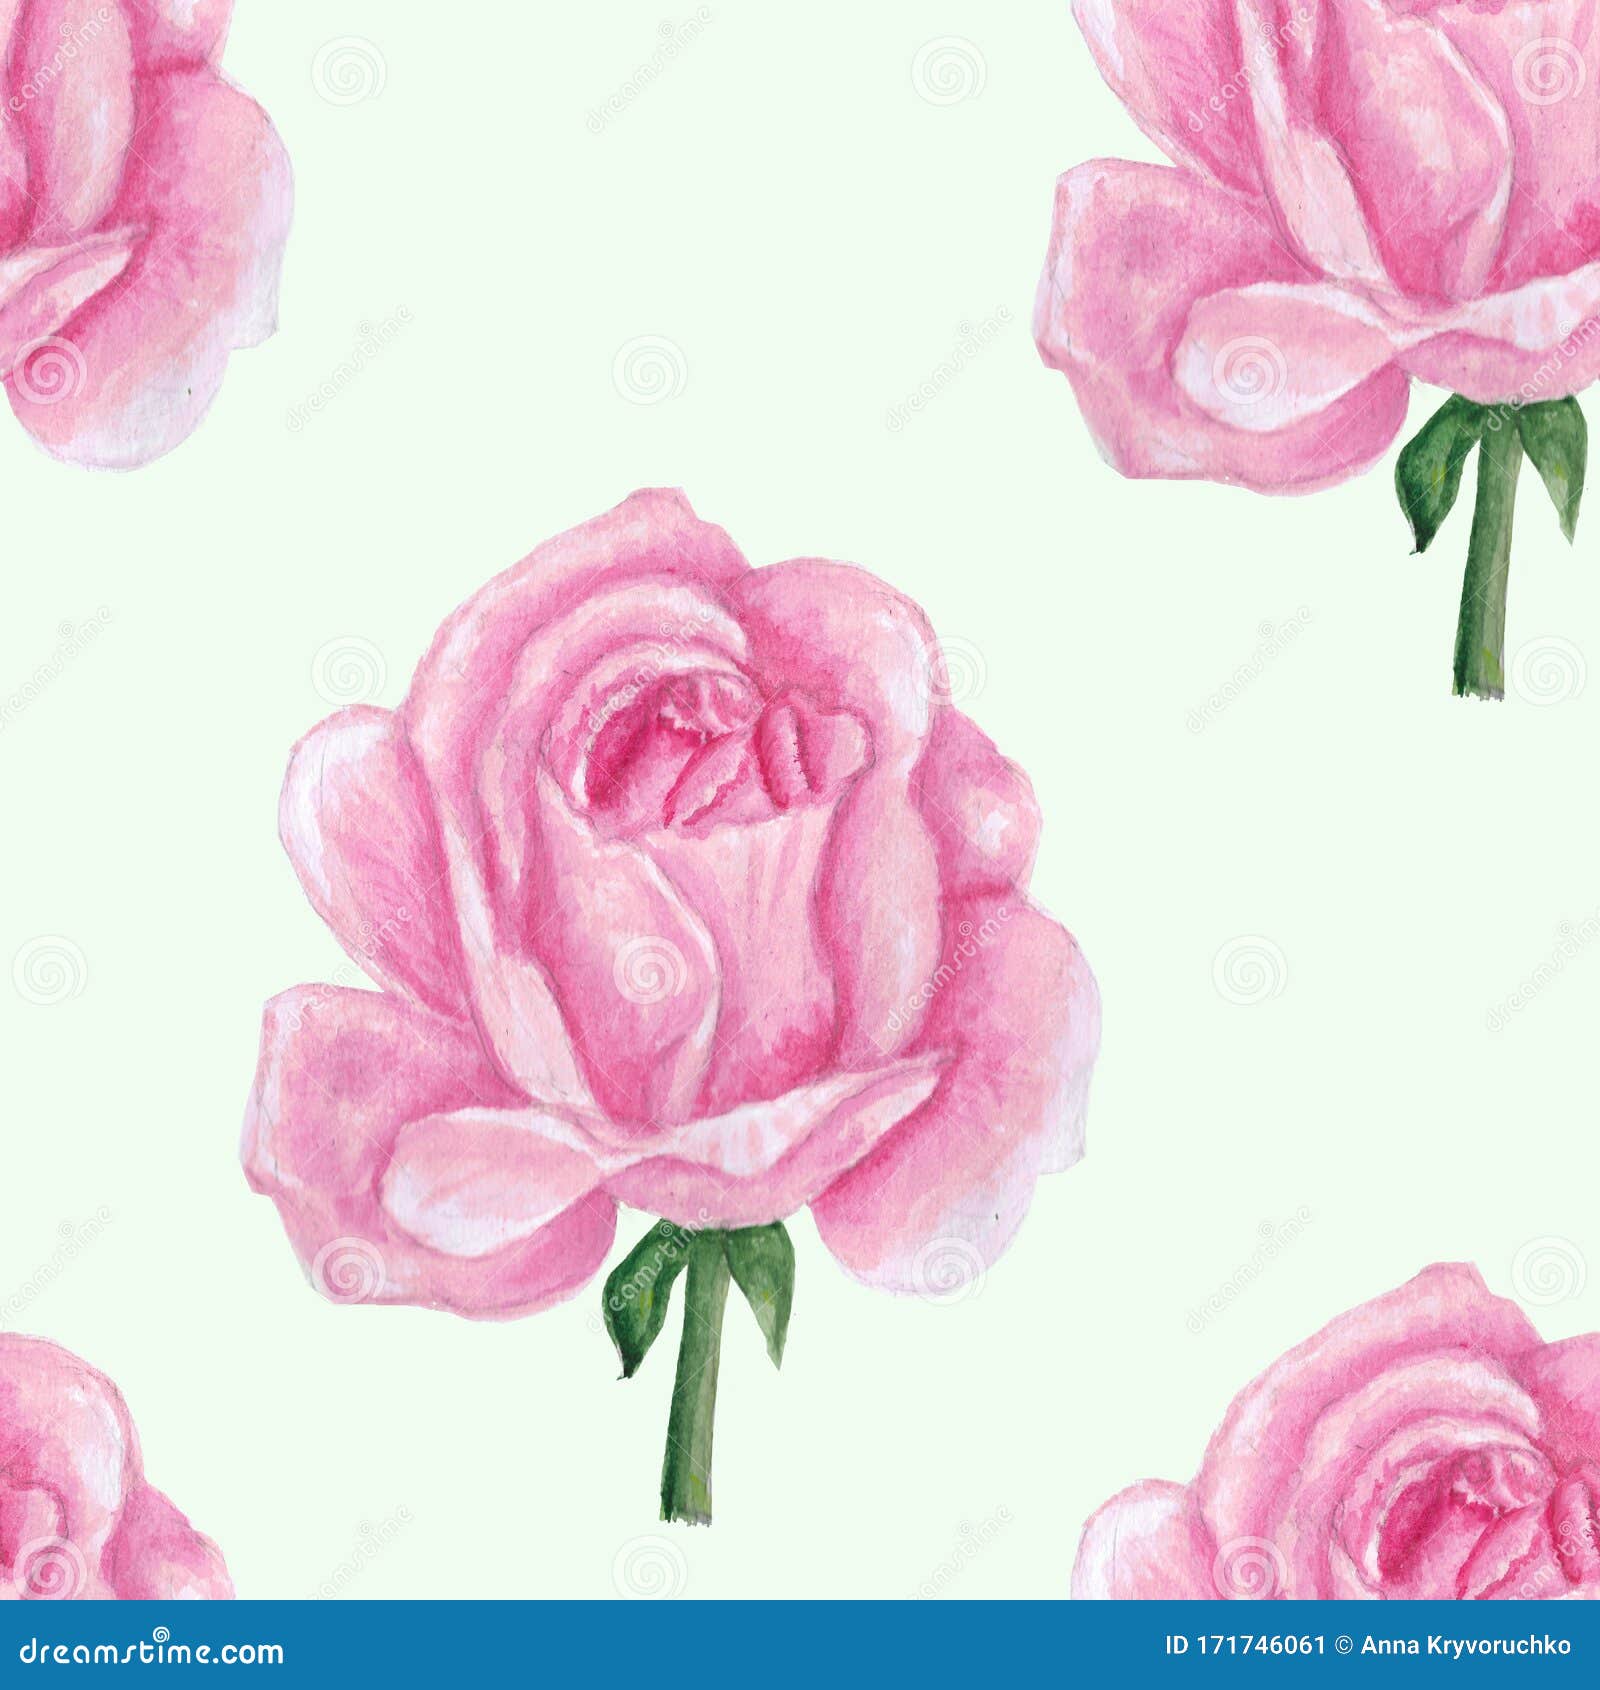 白色背景中的粉色玫瑰水彩无缝图案用水彩画的粉红玫瑰手 做壁纸 印花 库存例证 插画包括有用水彩画的粉红玫瑰手 做壁纸 印花 白色背景中的粉色玫瑰 水彩无缝图案